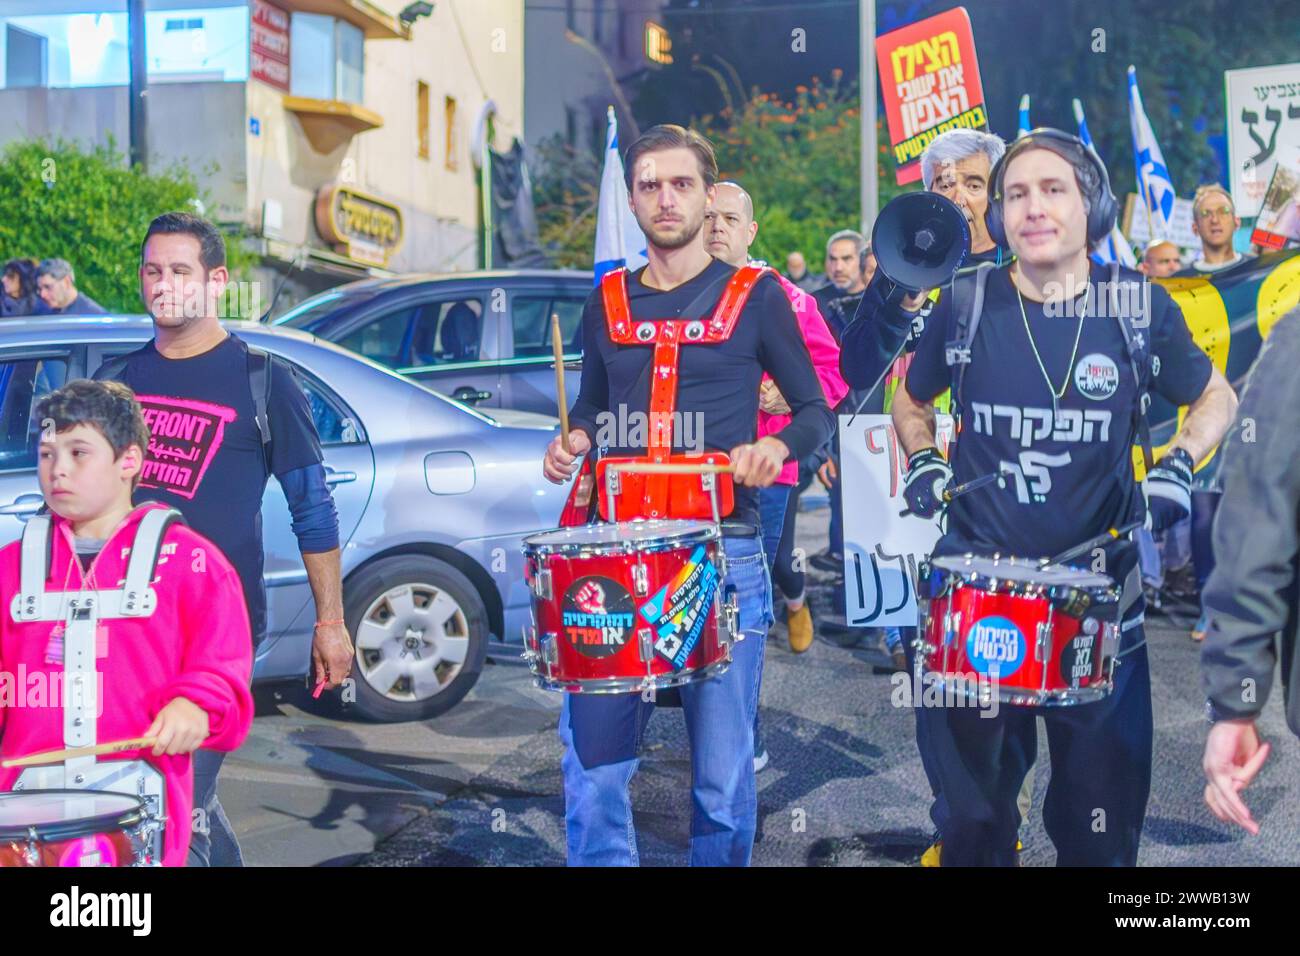 Haifa, Israele - 16 marzo 2024: Le persone prendono parte a una marcia di protesta, con vari segni e bandiere, contro il governo, che chiede nuove elezioni. Foto Stock